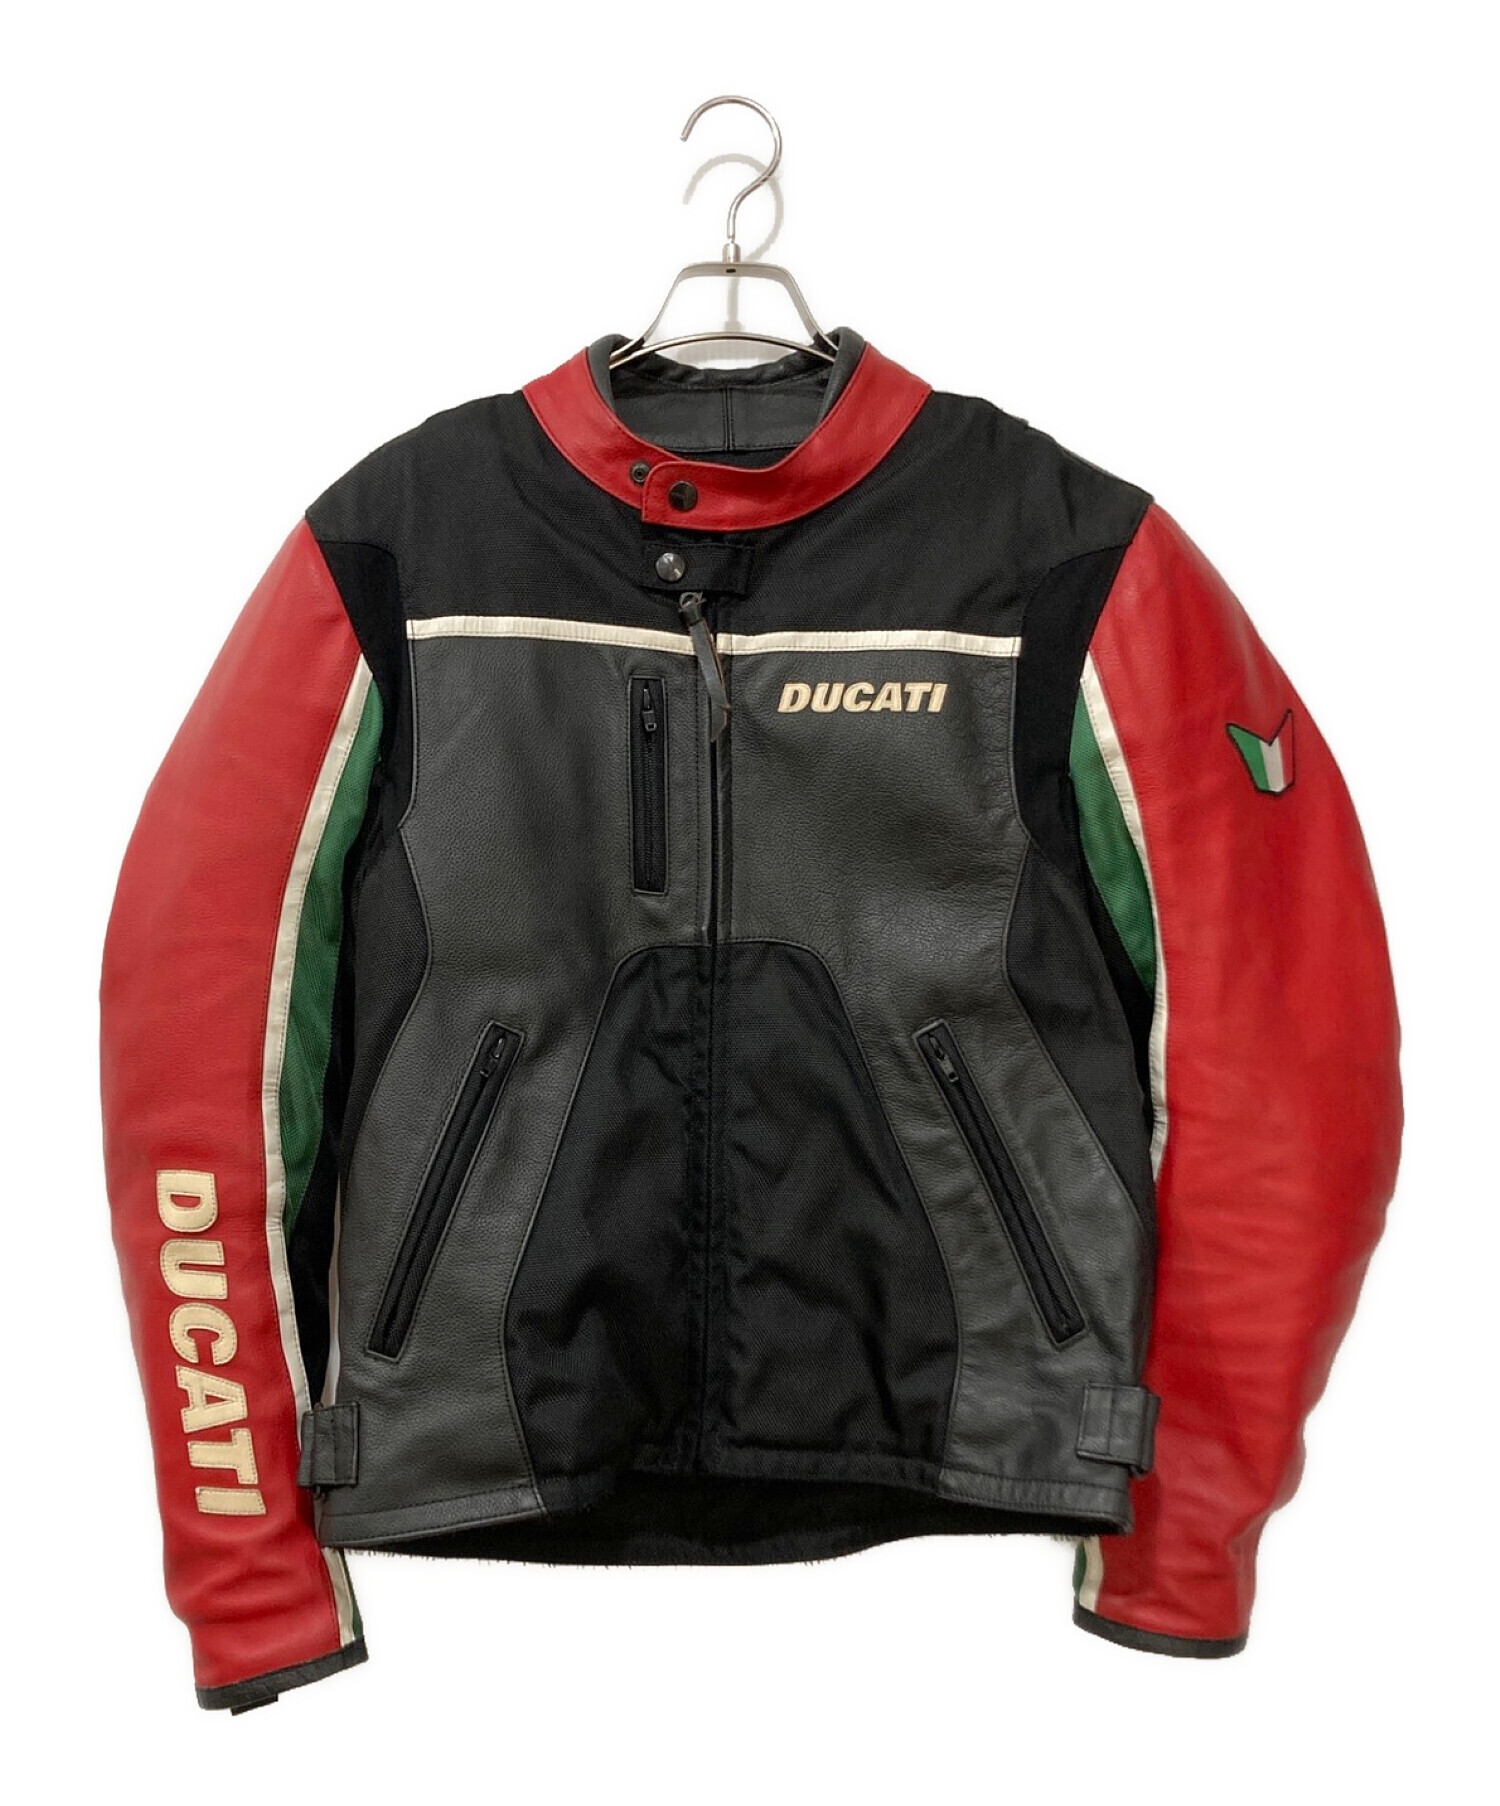 DUCATI (ドゥカティ) レーシングジャケット レッド サイズ:L